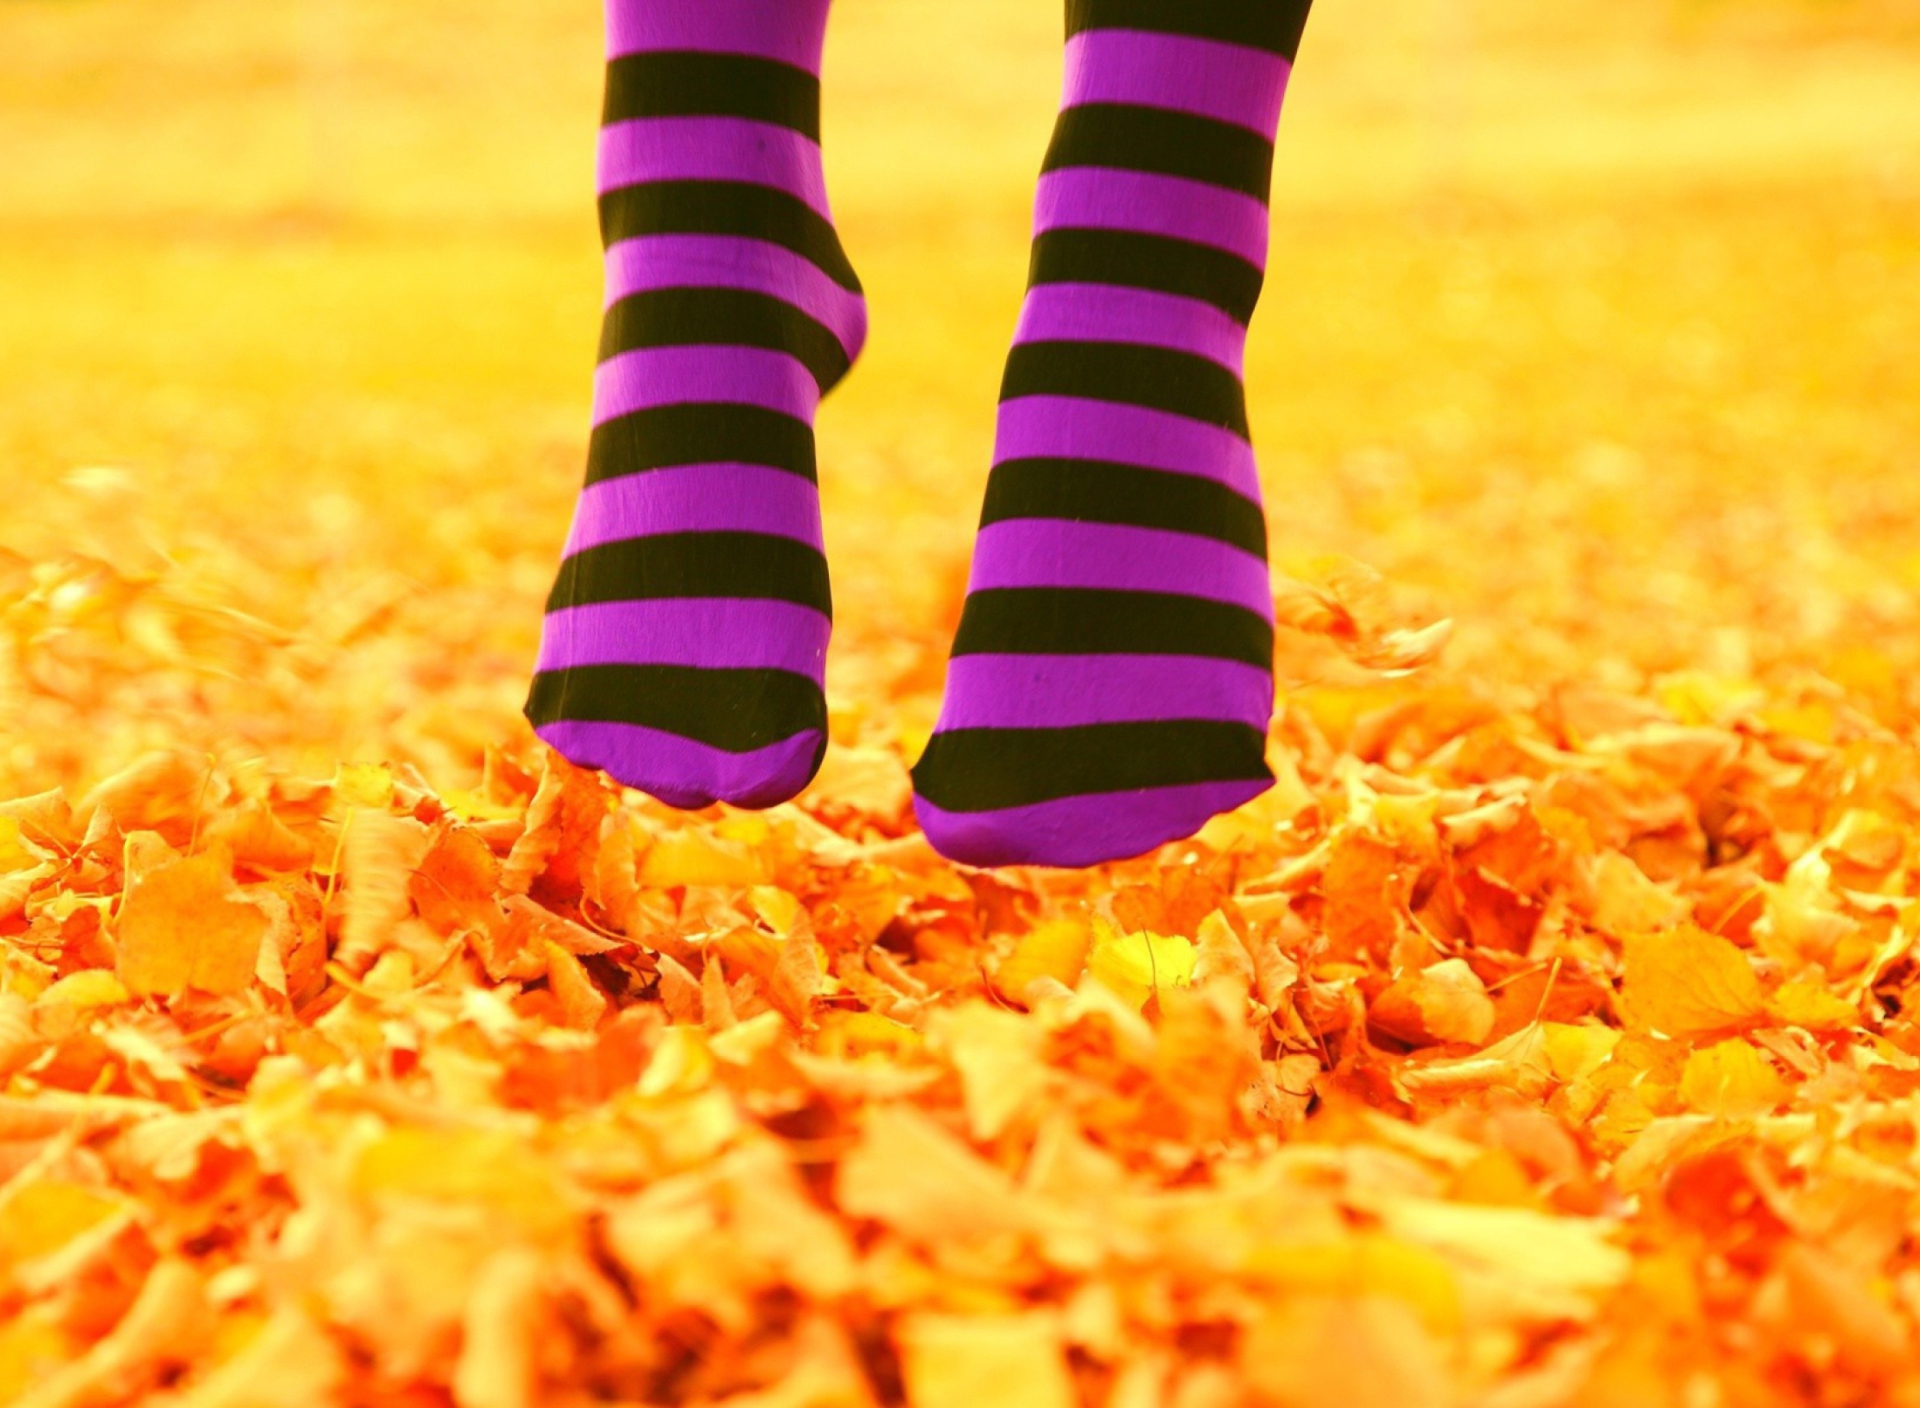 Обои Purple Feet And Yellow Leaves 1920x1408